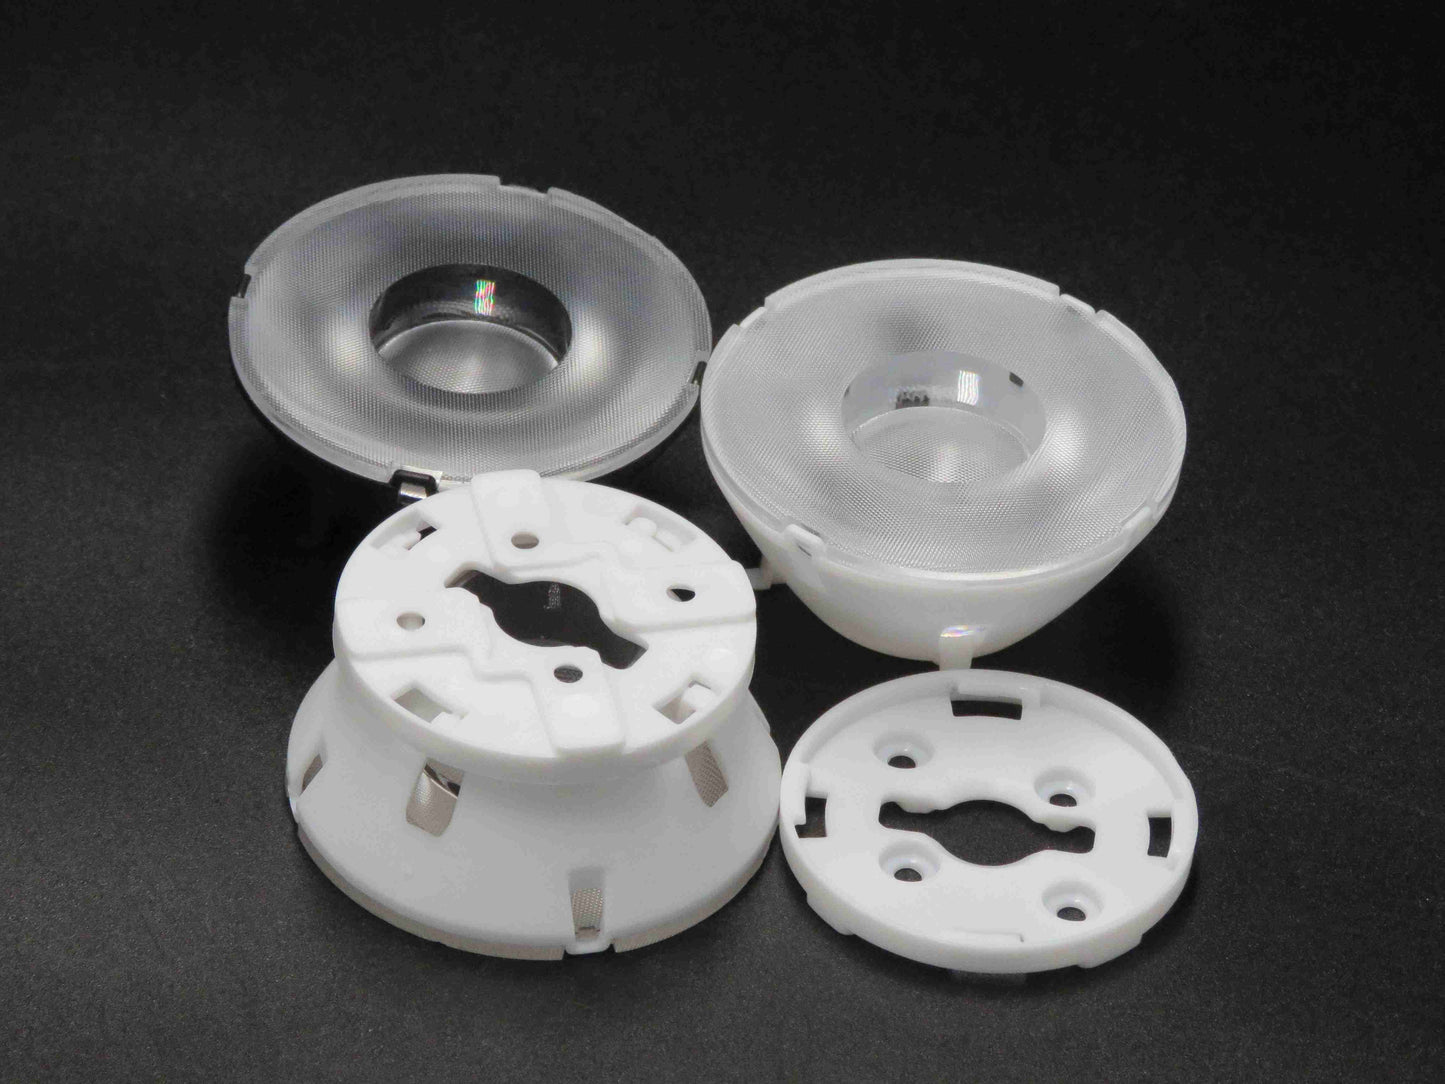 Vnitřní osvětlení Cob Komerční Down light Optika Čočky Led Manufacturing Track Light Lens